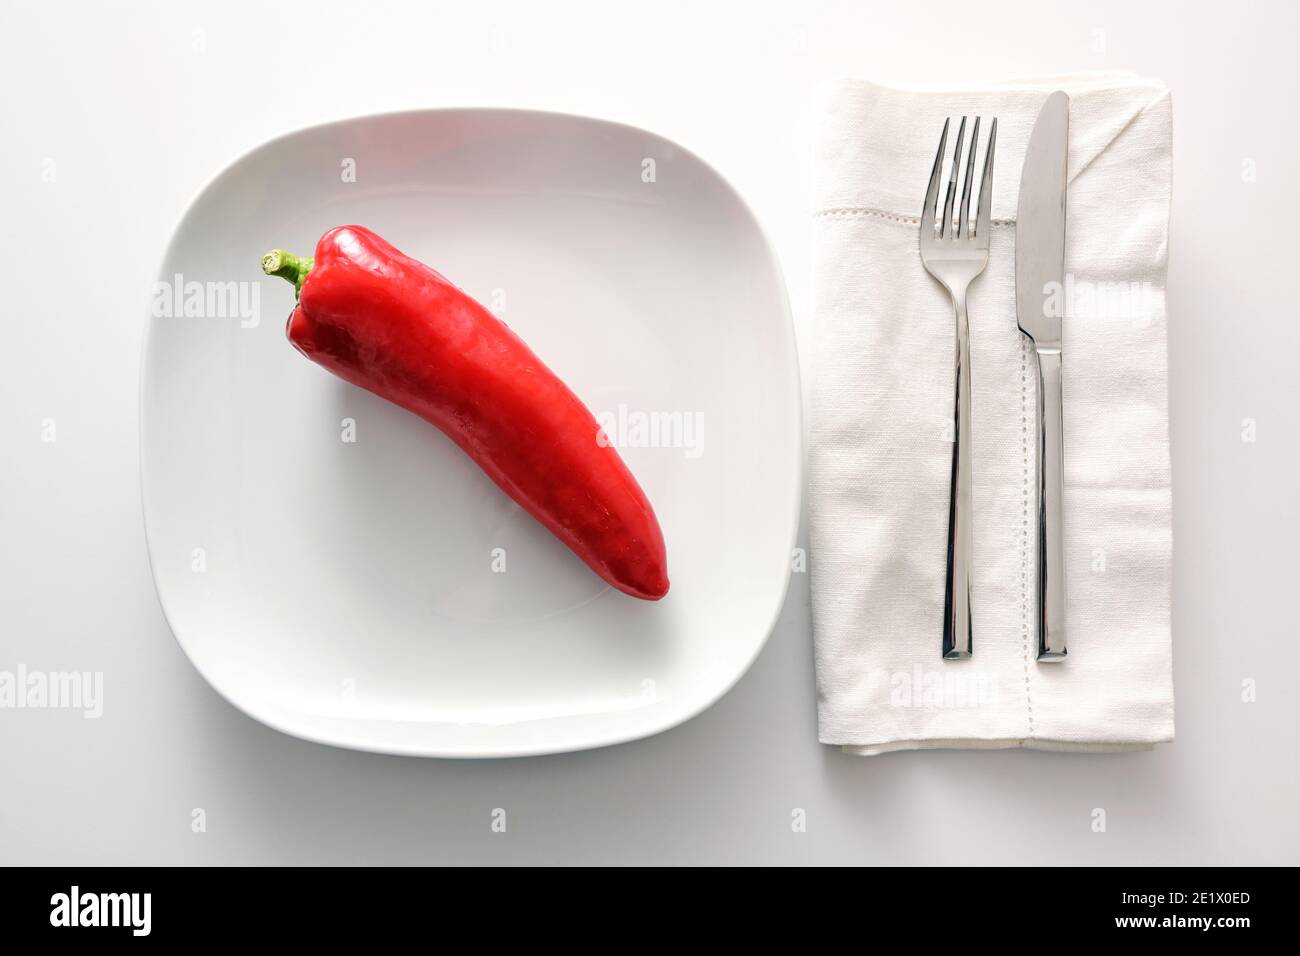 Roher roter, spitzer Paprika auf weißem Teller, Besteck und Serviette daneben auf hellem Hintergrund, gesunde Ernährung mit Gemüse oder Diät, um Gewicht zu verlieren Stockfoto